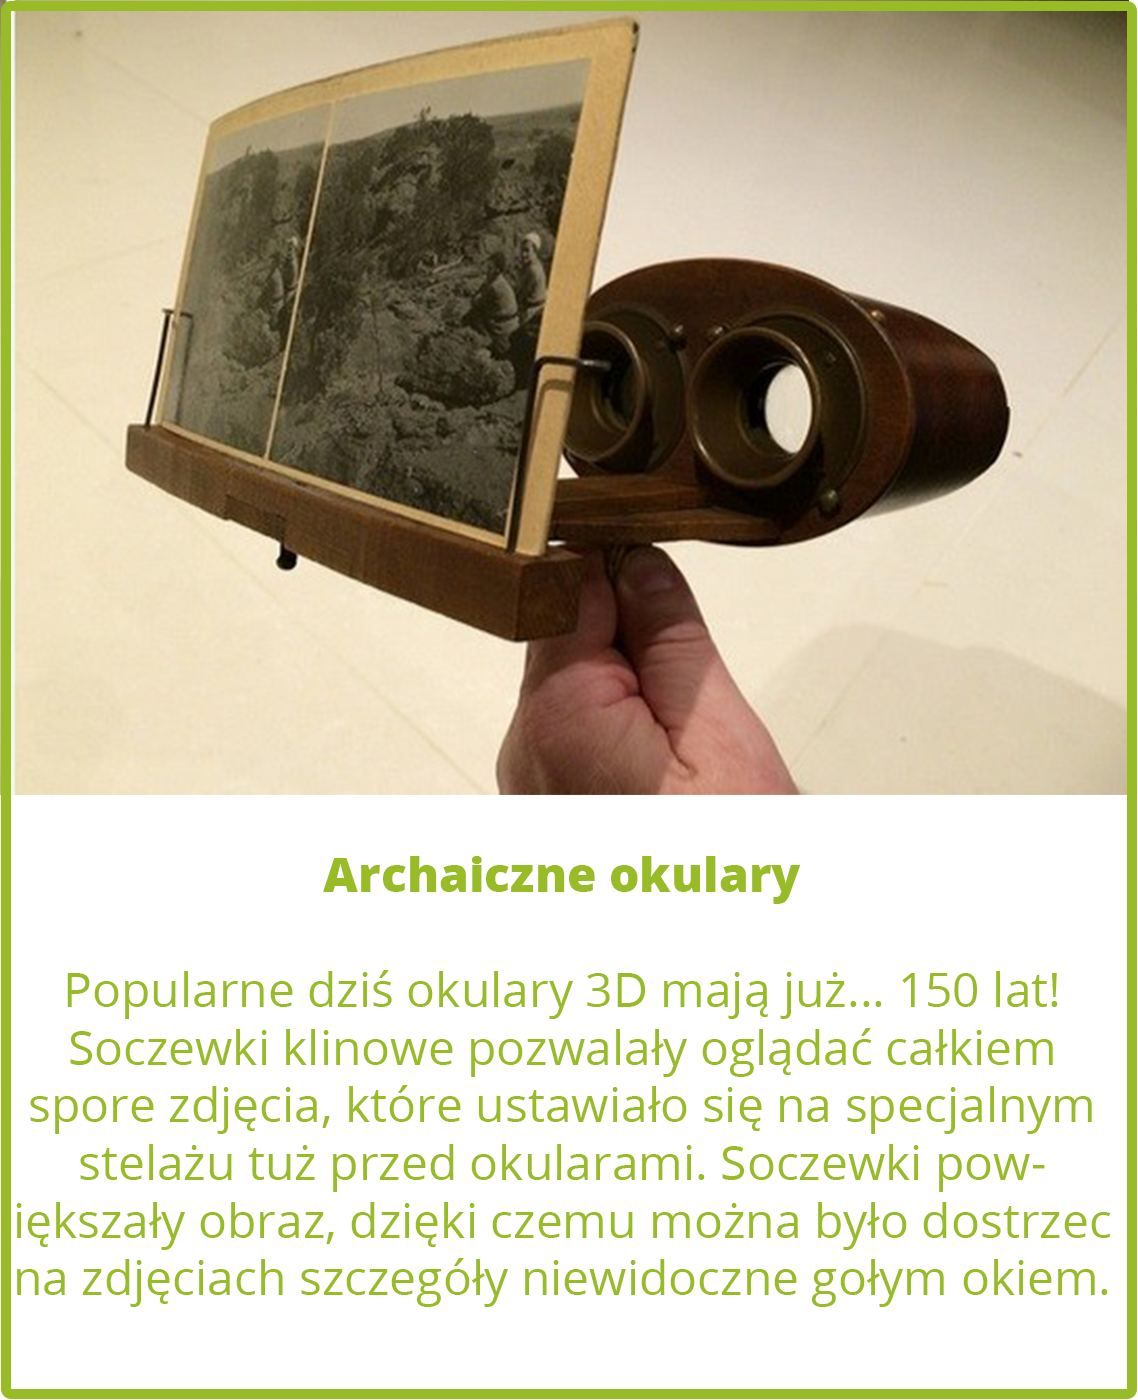 Archaiczne okulary 3D